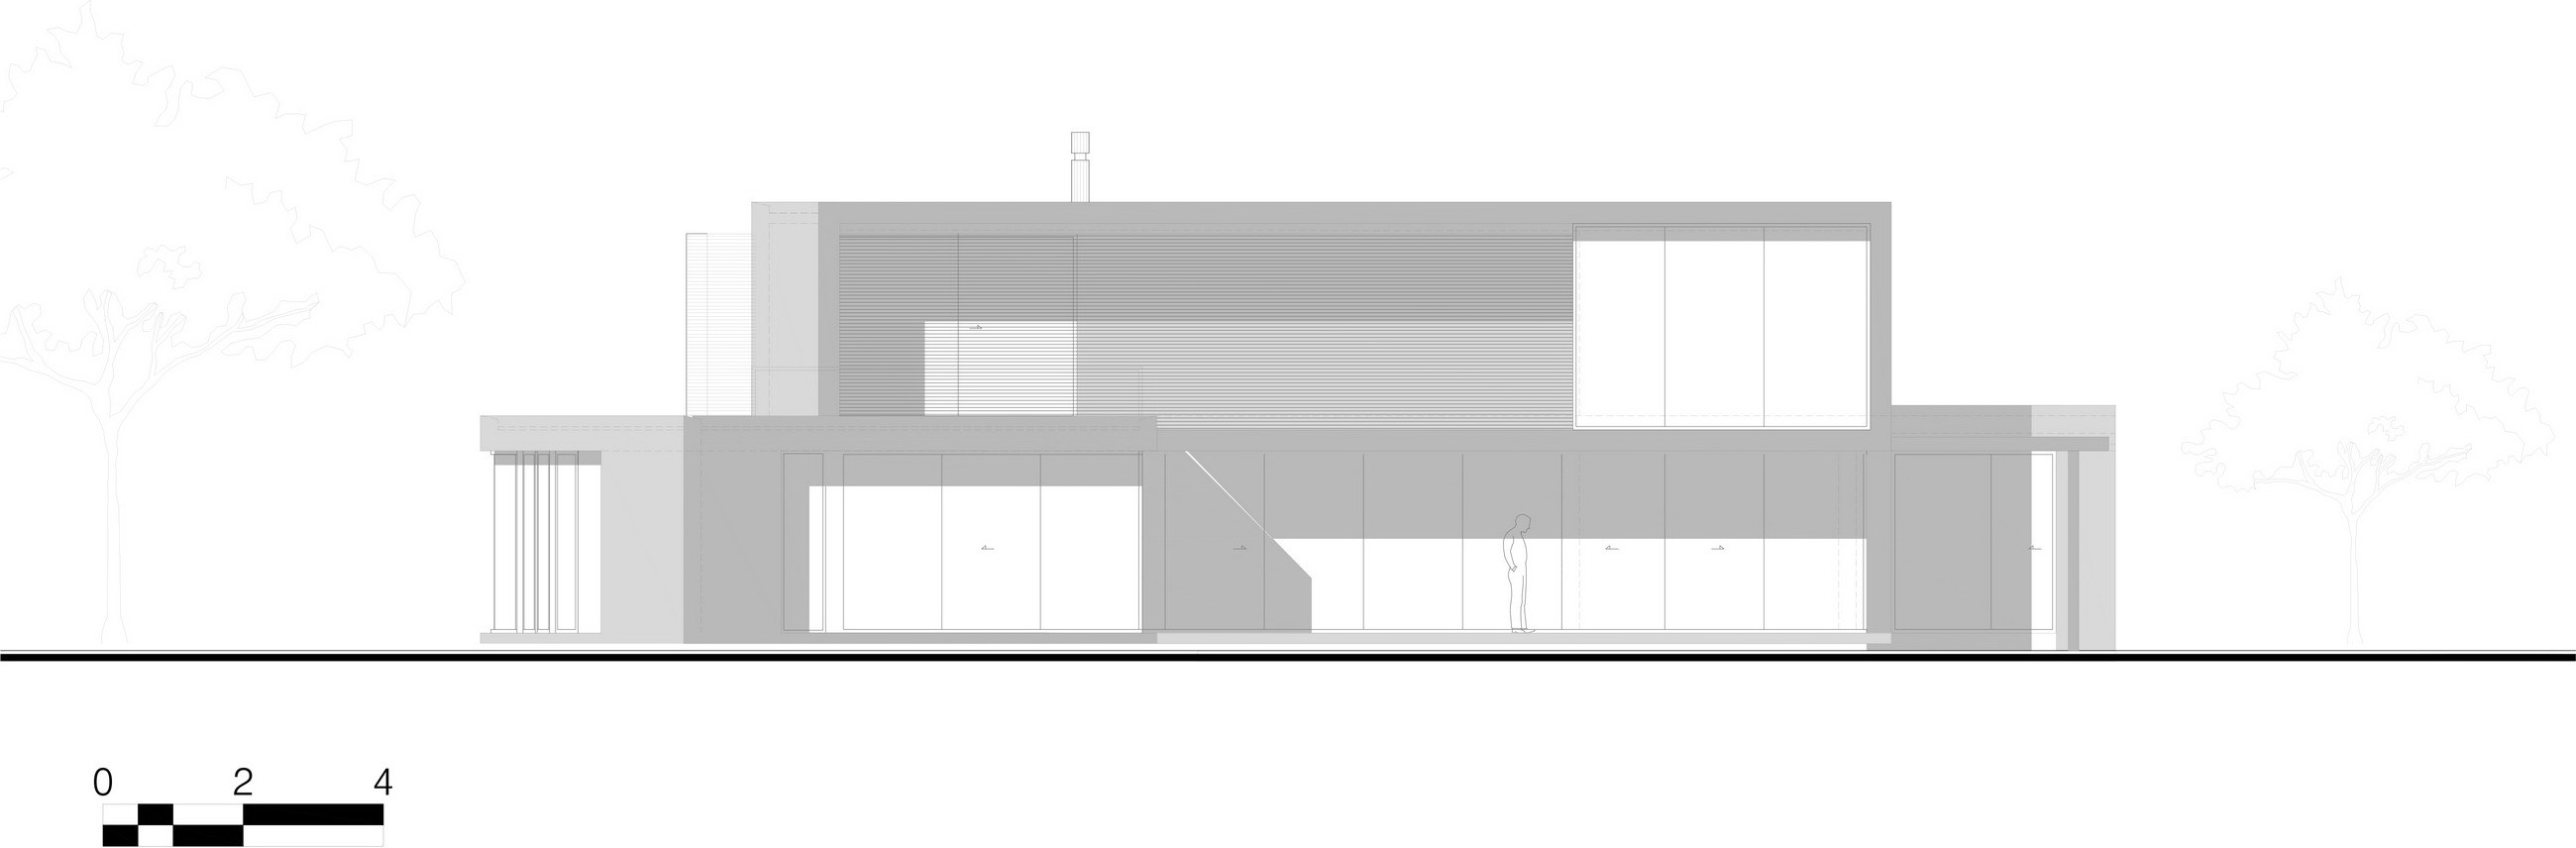 Casa 5 by Arquitectura en Estudio